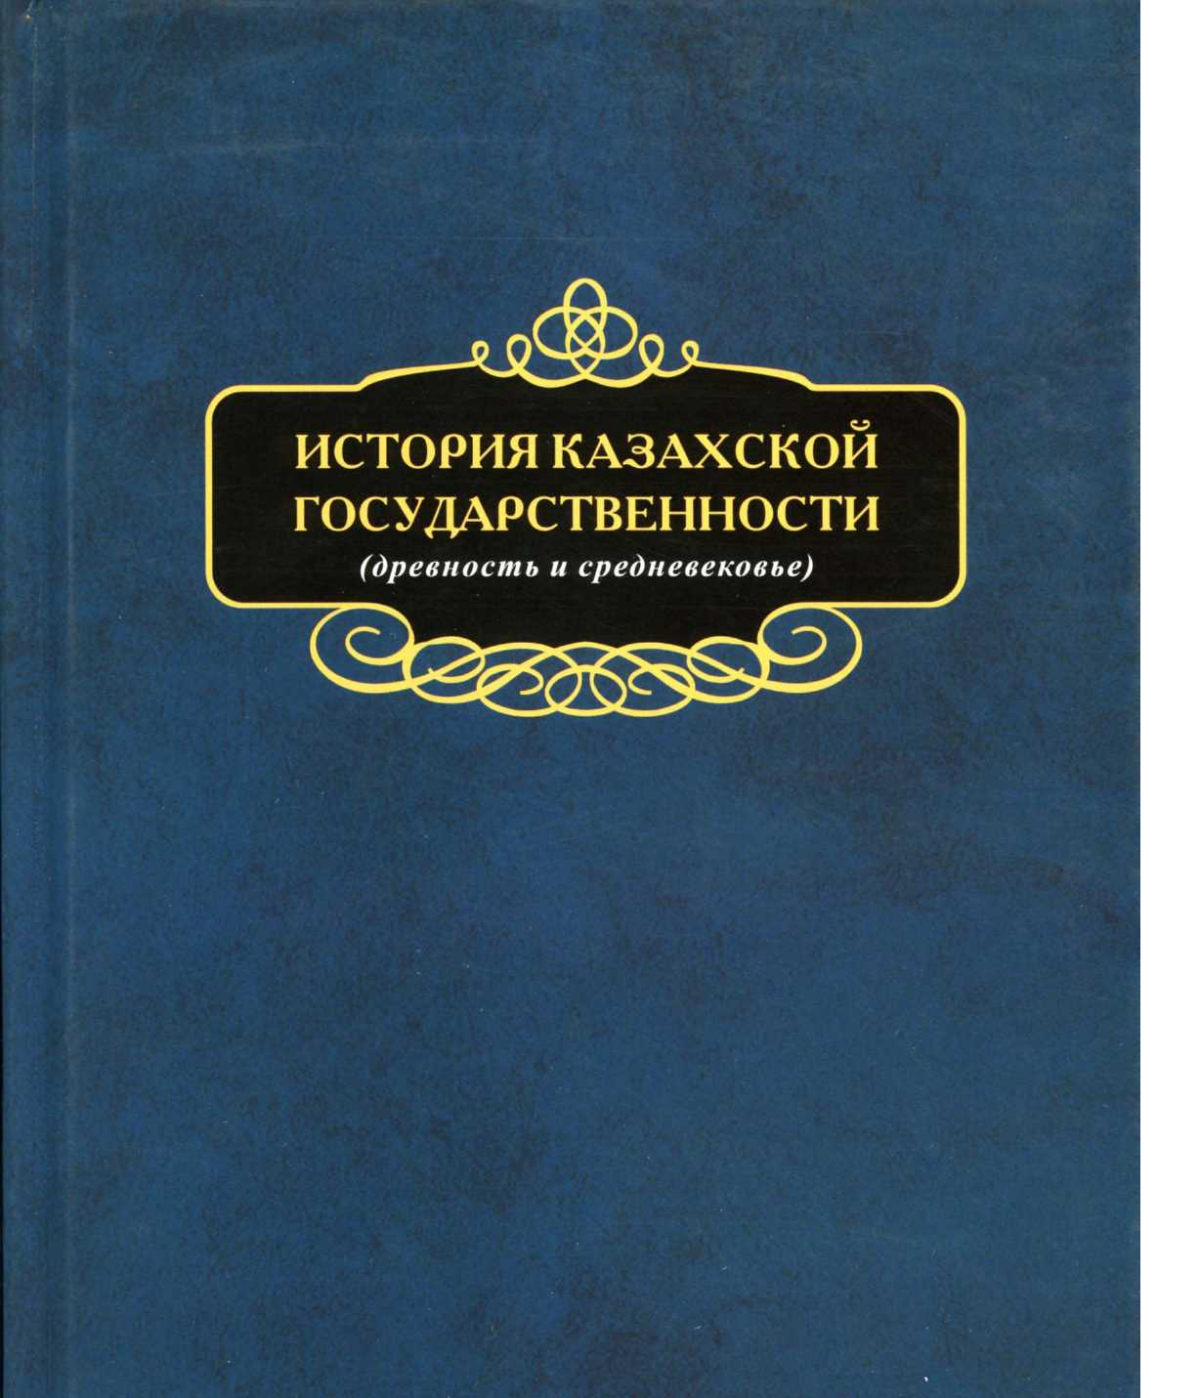 История Казахской государственности (древность и средневековье) - e-history.kz